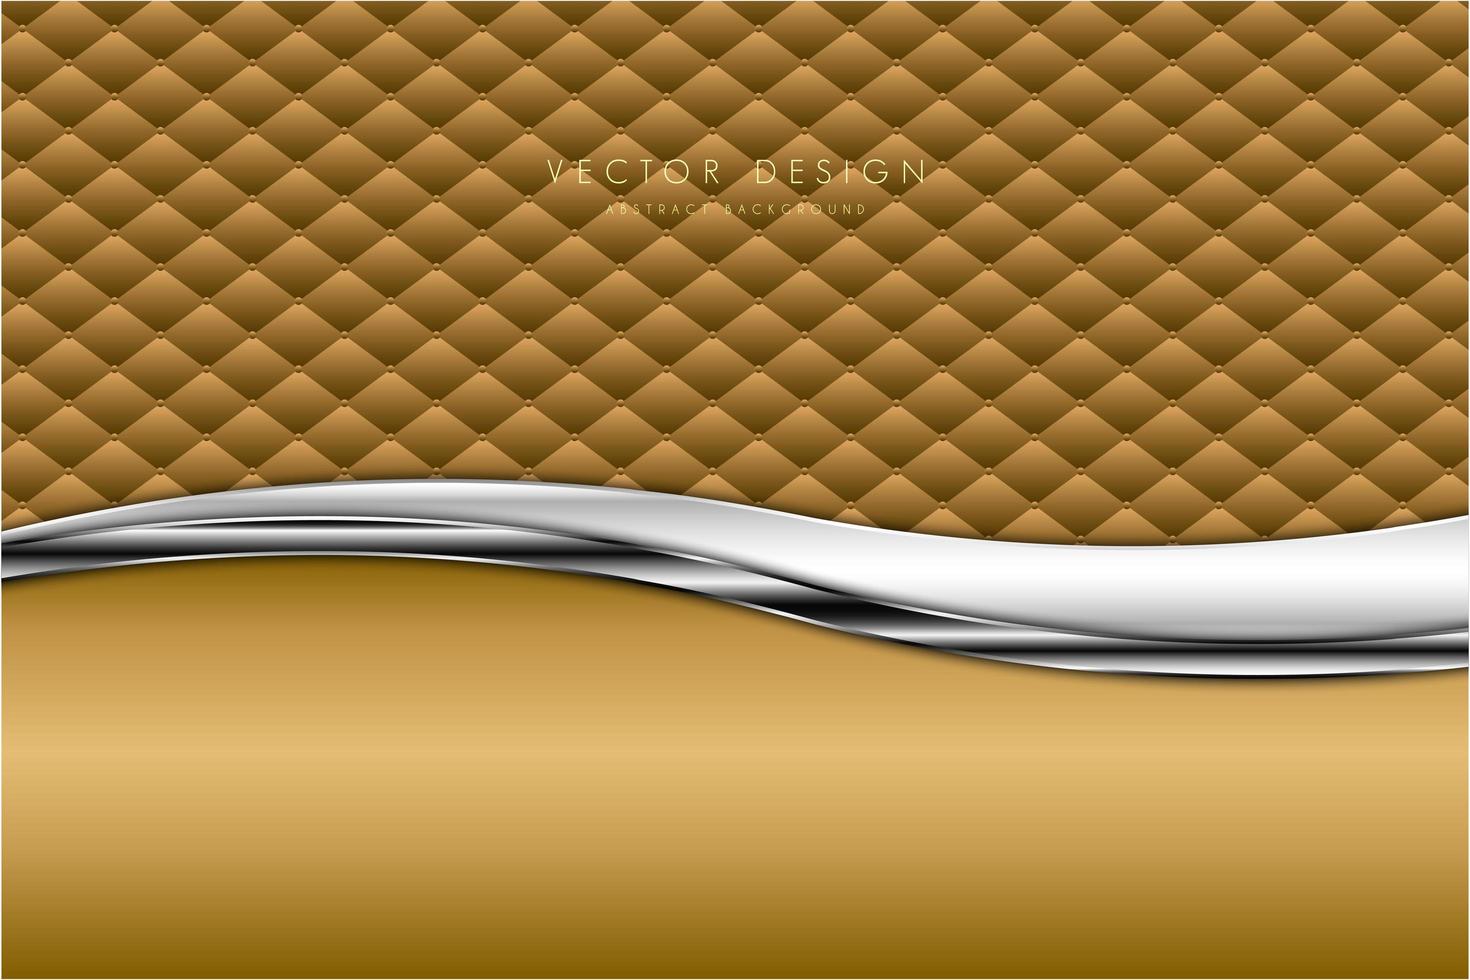 Luxus Gold und Silber mit Polsterung modernes Design vektor